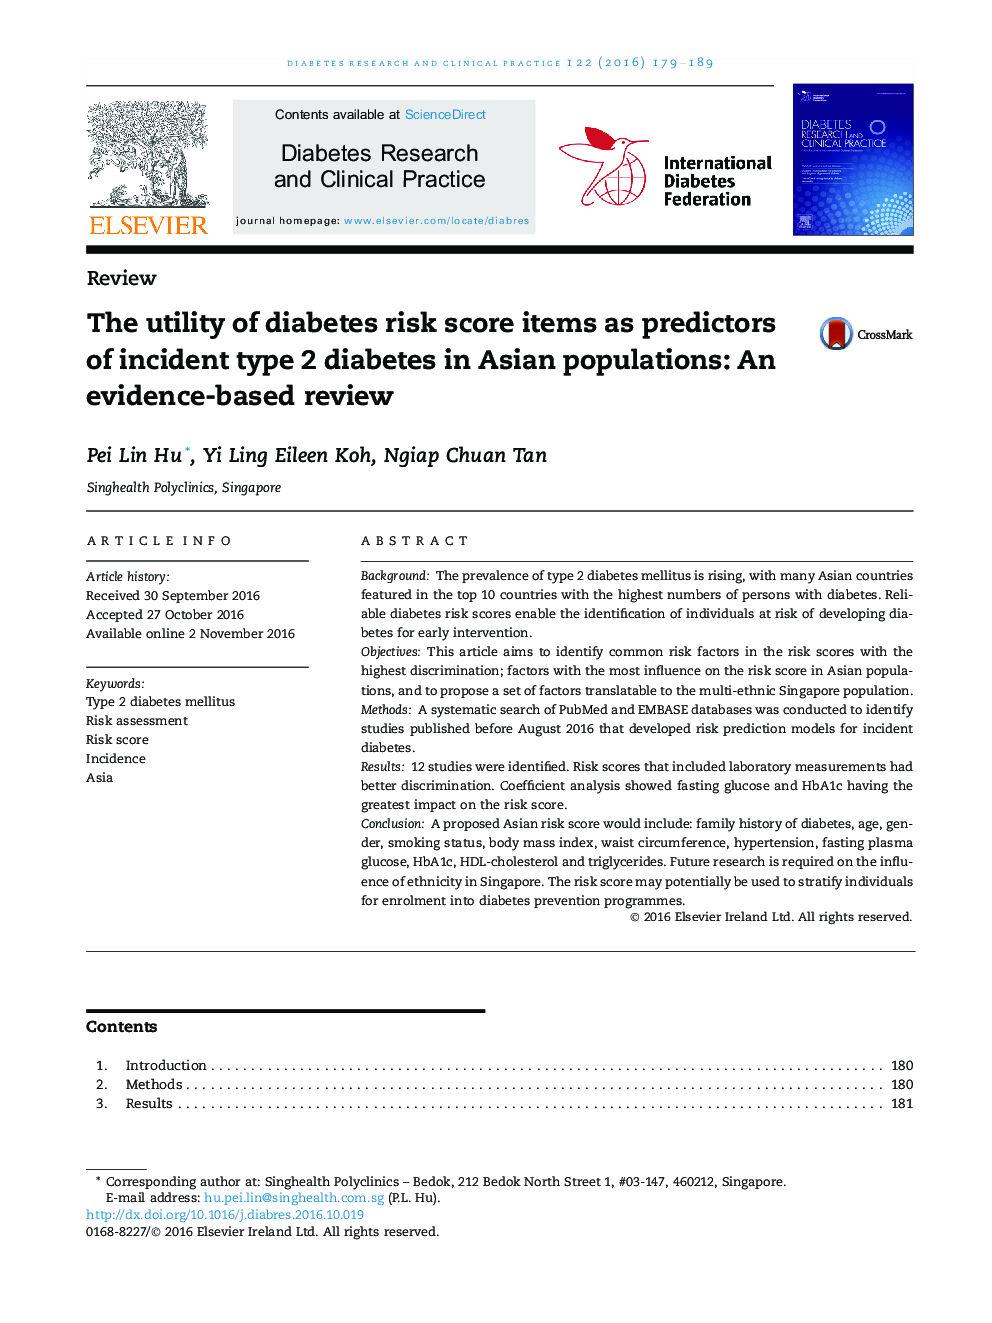 استفاده از مقادیر ریسک ابتلا به دیابت به عنوان پیش بینی کننده بیماری دیابت نوع 2 در جمعیت آسیا: یک بررسی مبتنی بر شواهد 